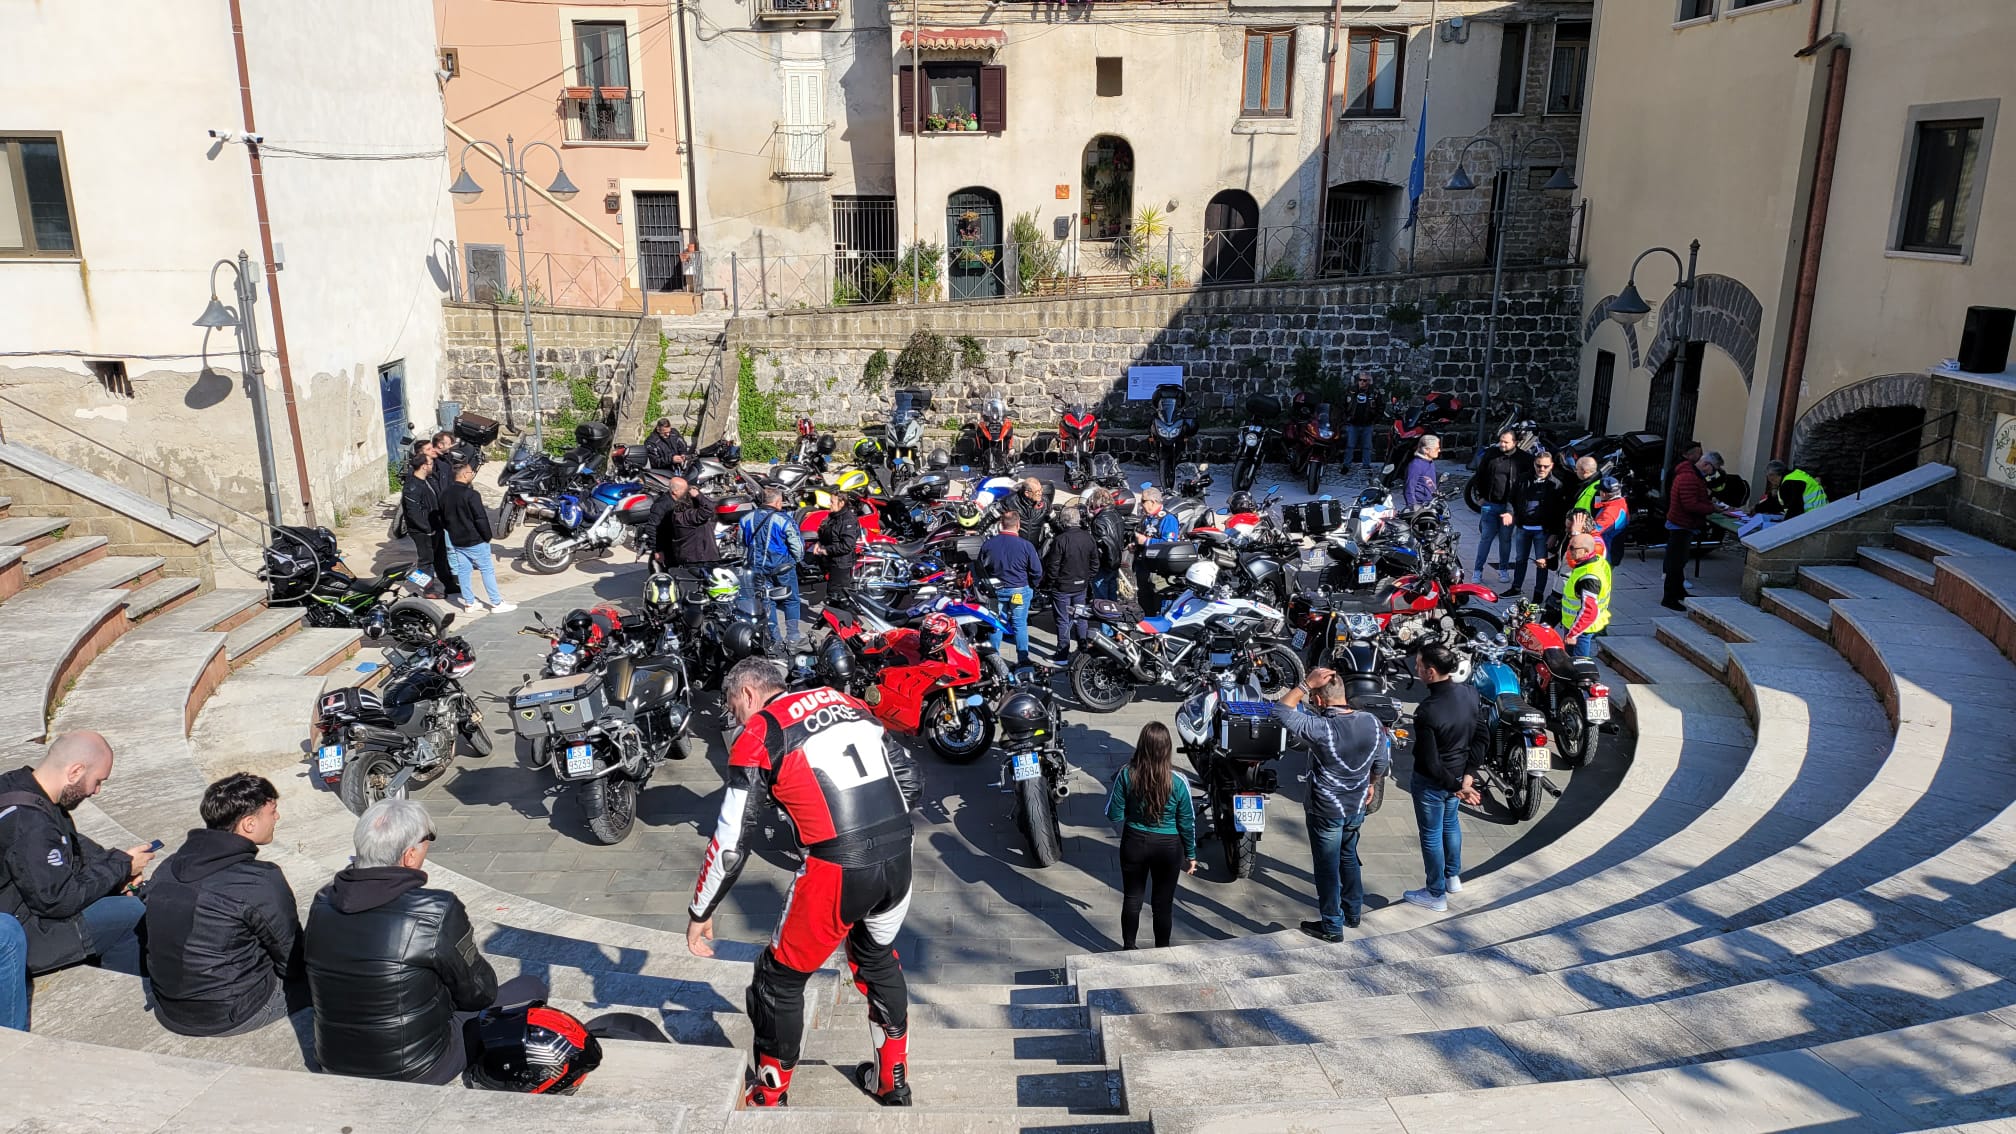 Castelvenere, successo per il raduno dei ‘Motociclisti Sanniti’